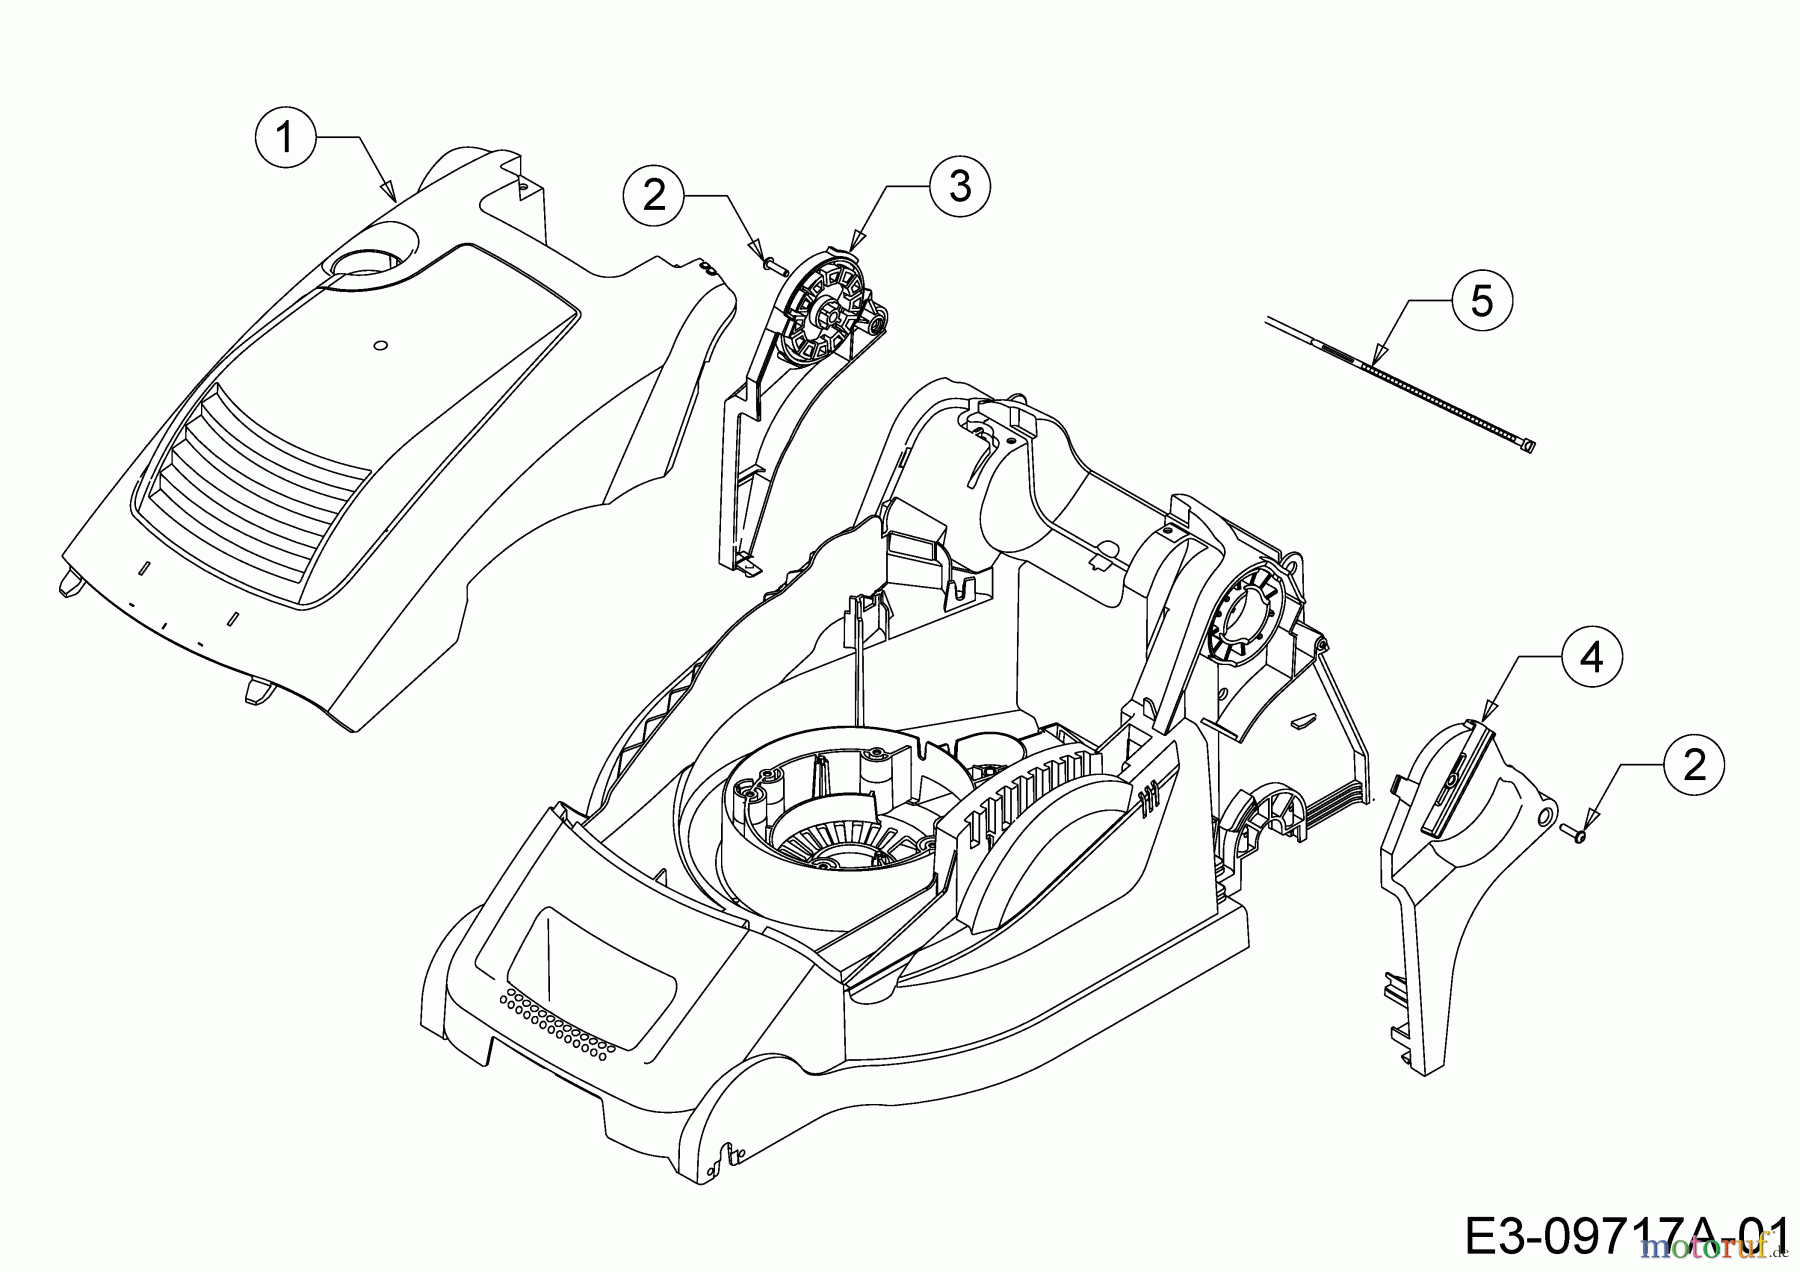  Wolf-Garten Elektromäher mit Antrieb A 400 EA 18CRMLM1650  (2018) Abdeckung seitlich, Motorhaube